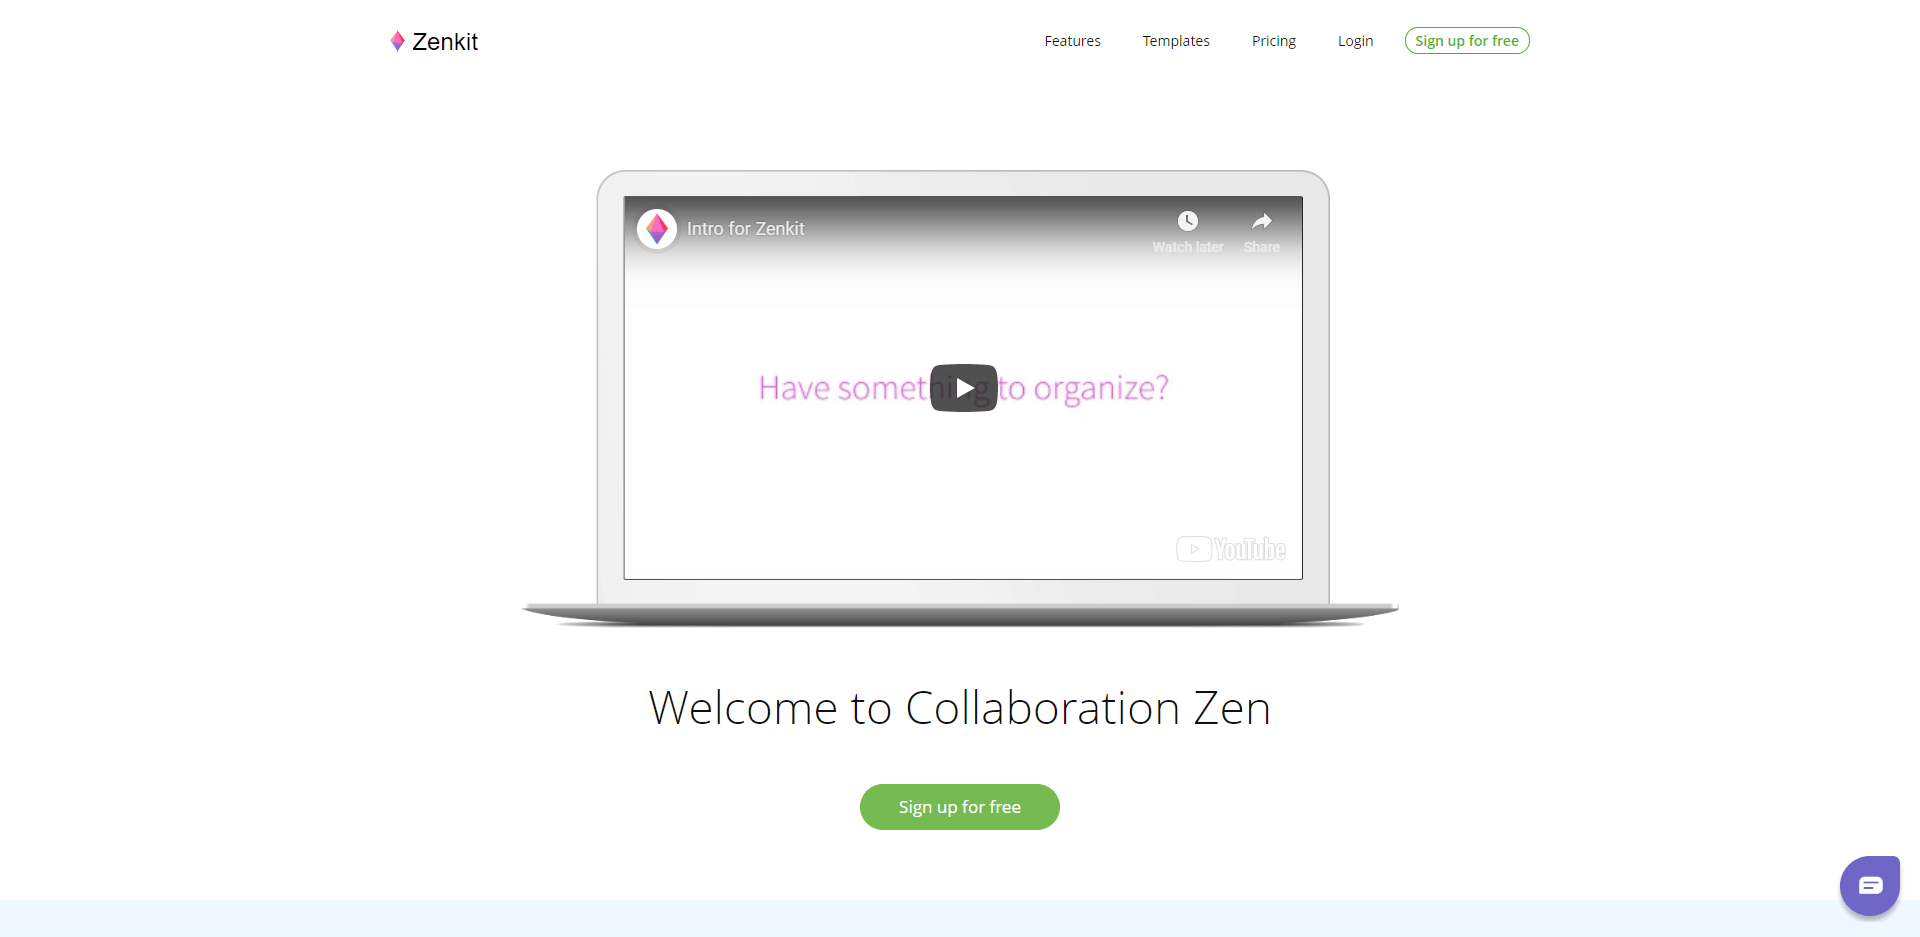 Welcome to Collaboration Zen - Zenkit